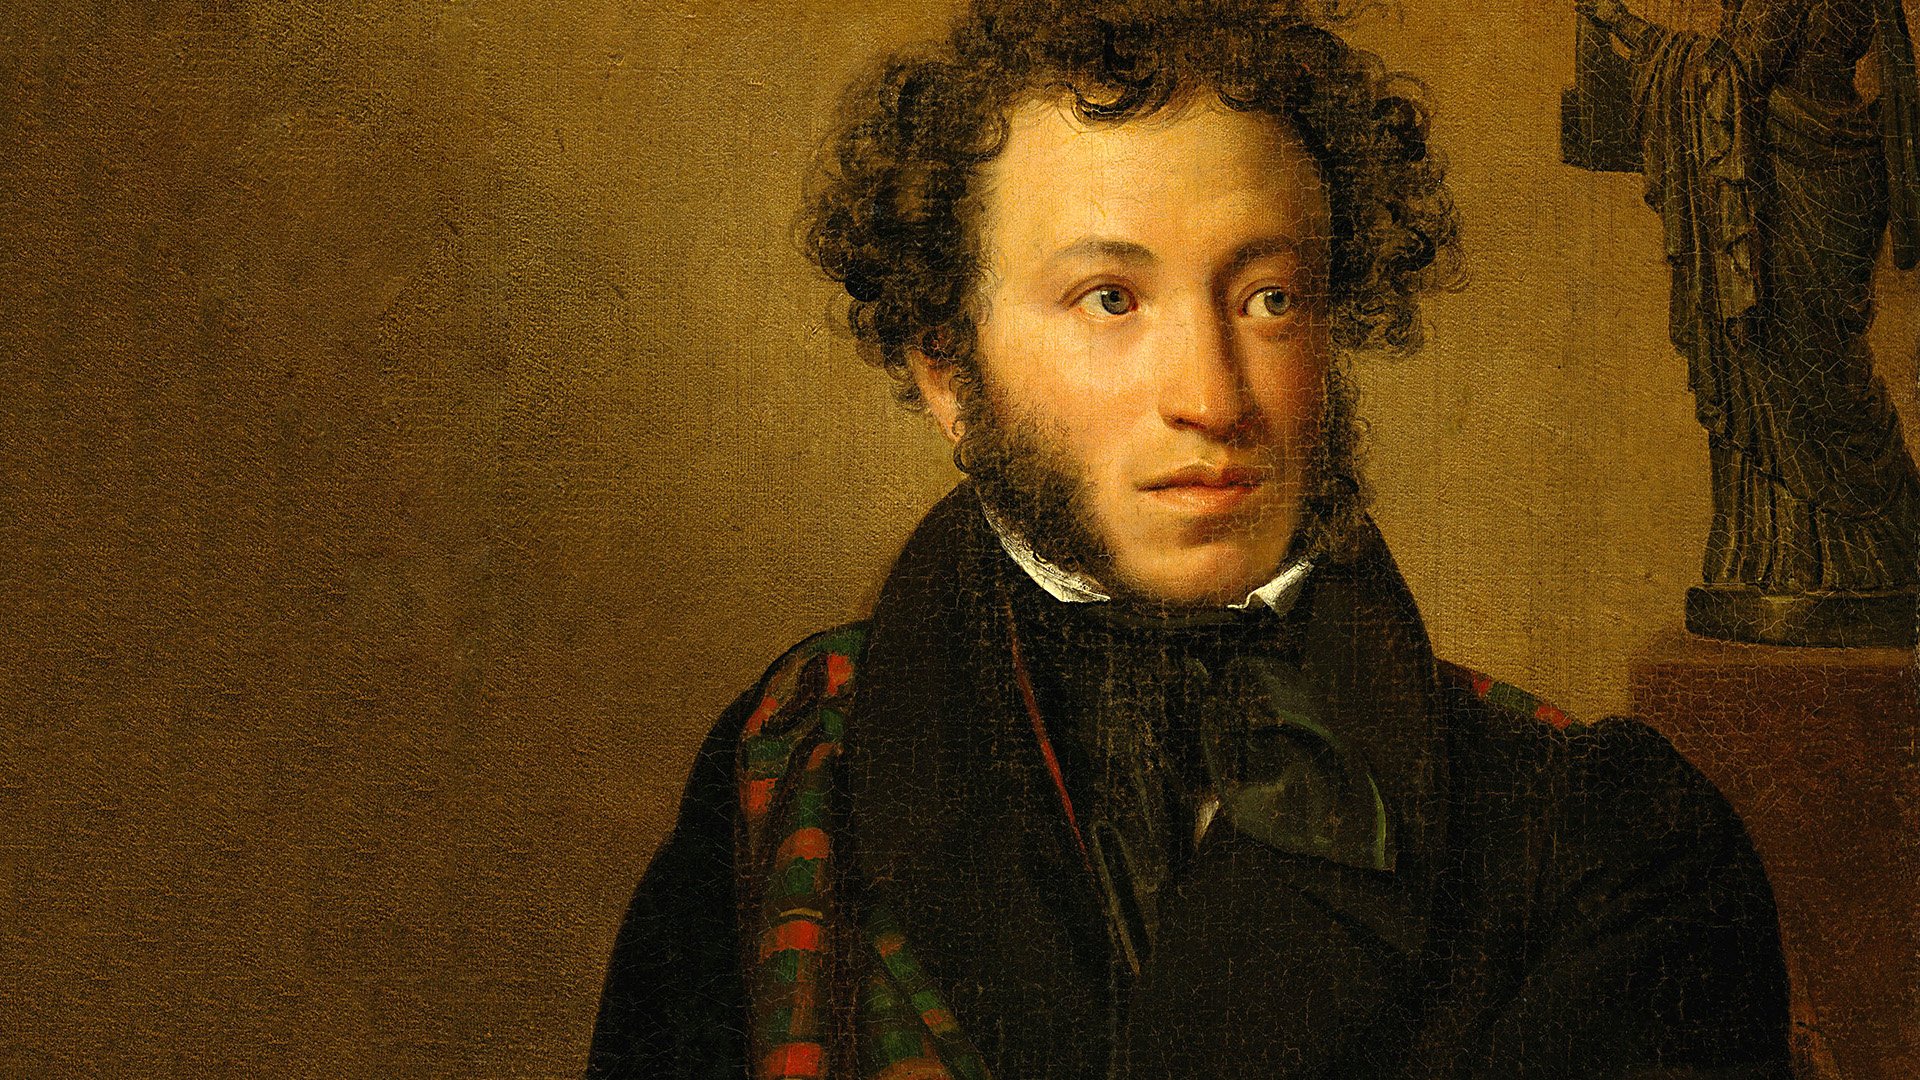 Неизданные стихи: что виртуальный Пушкин написал об Омске